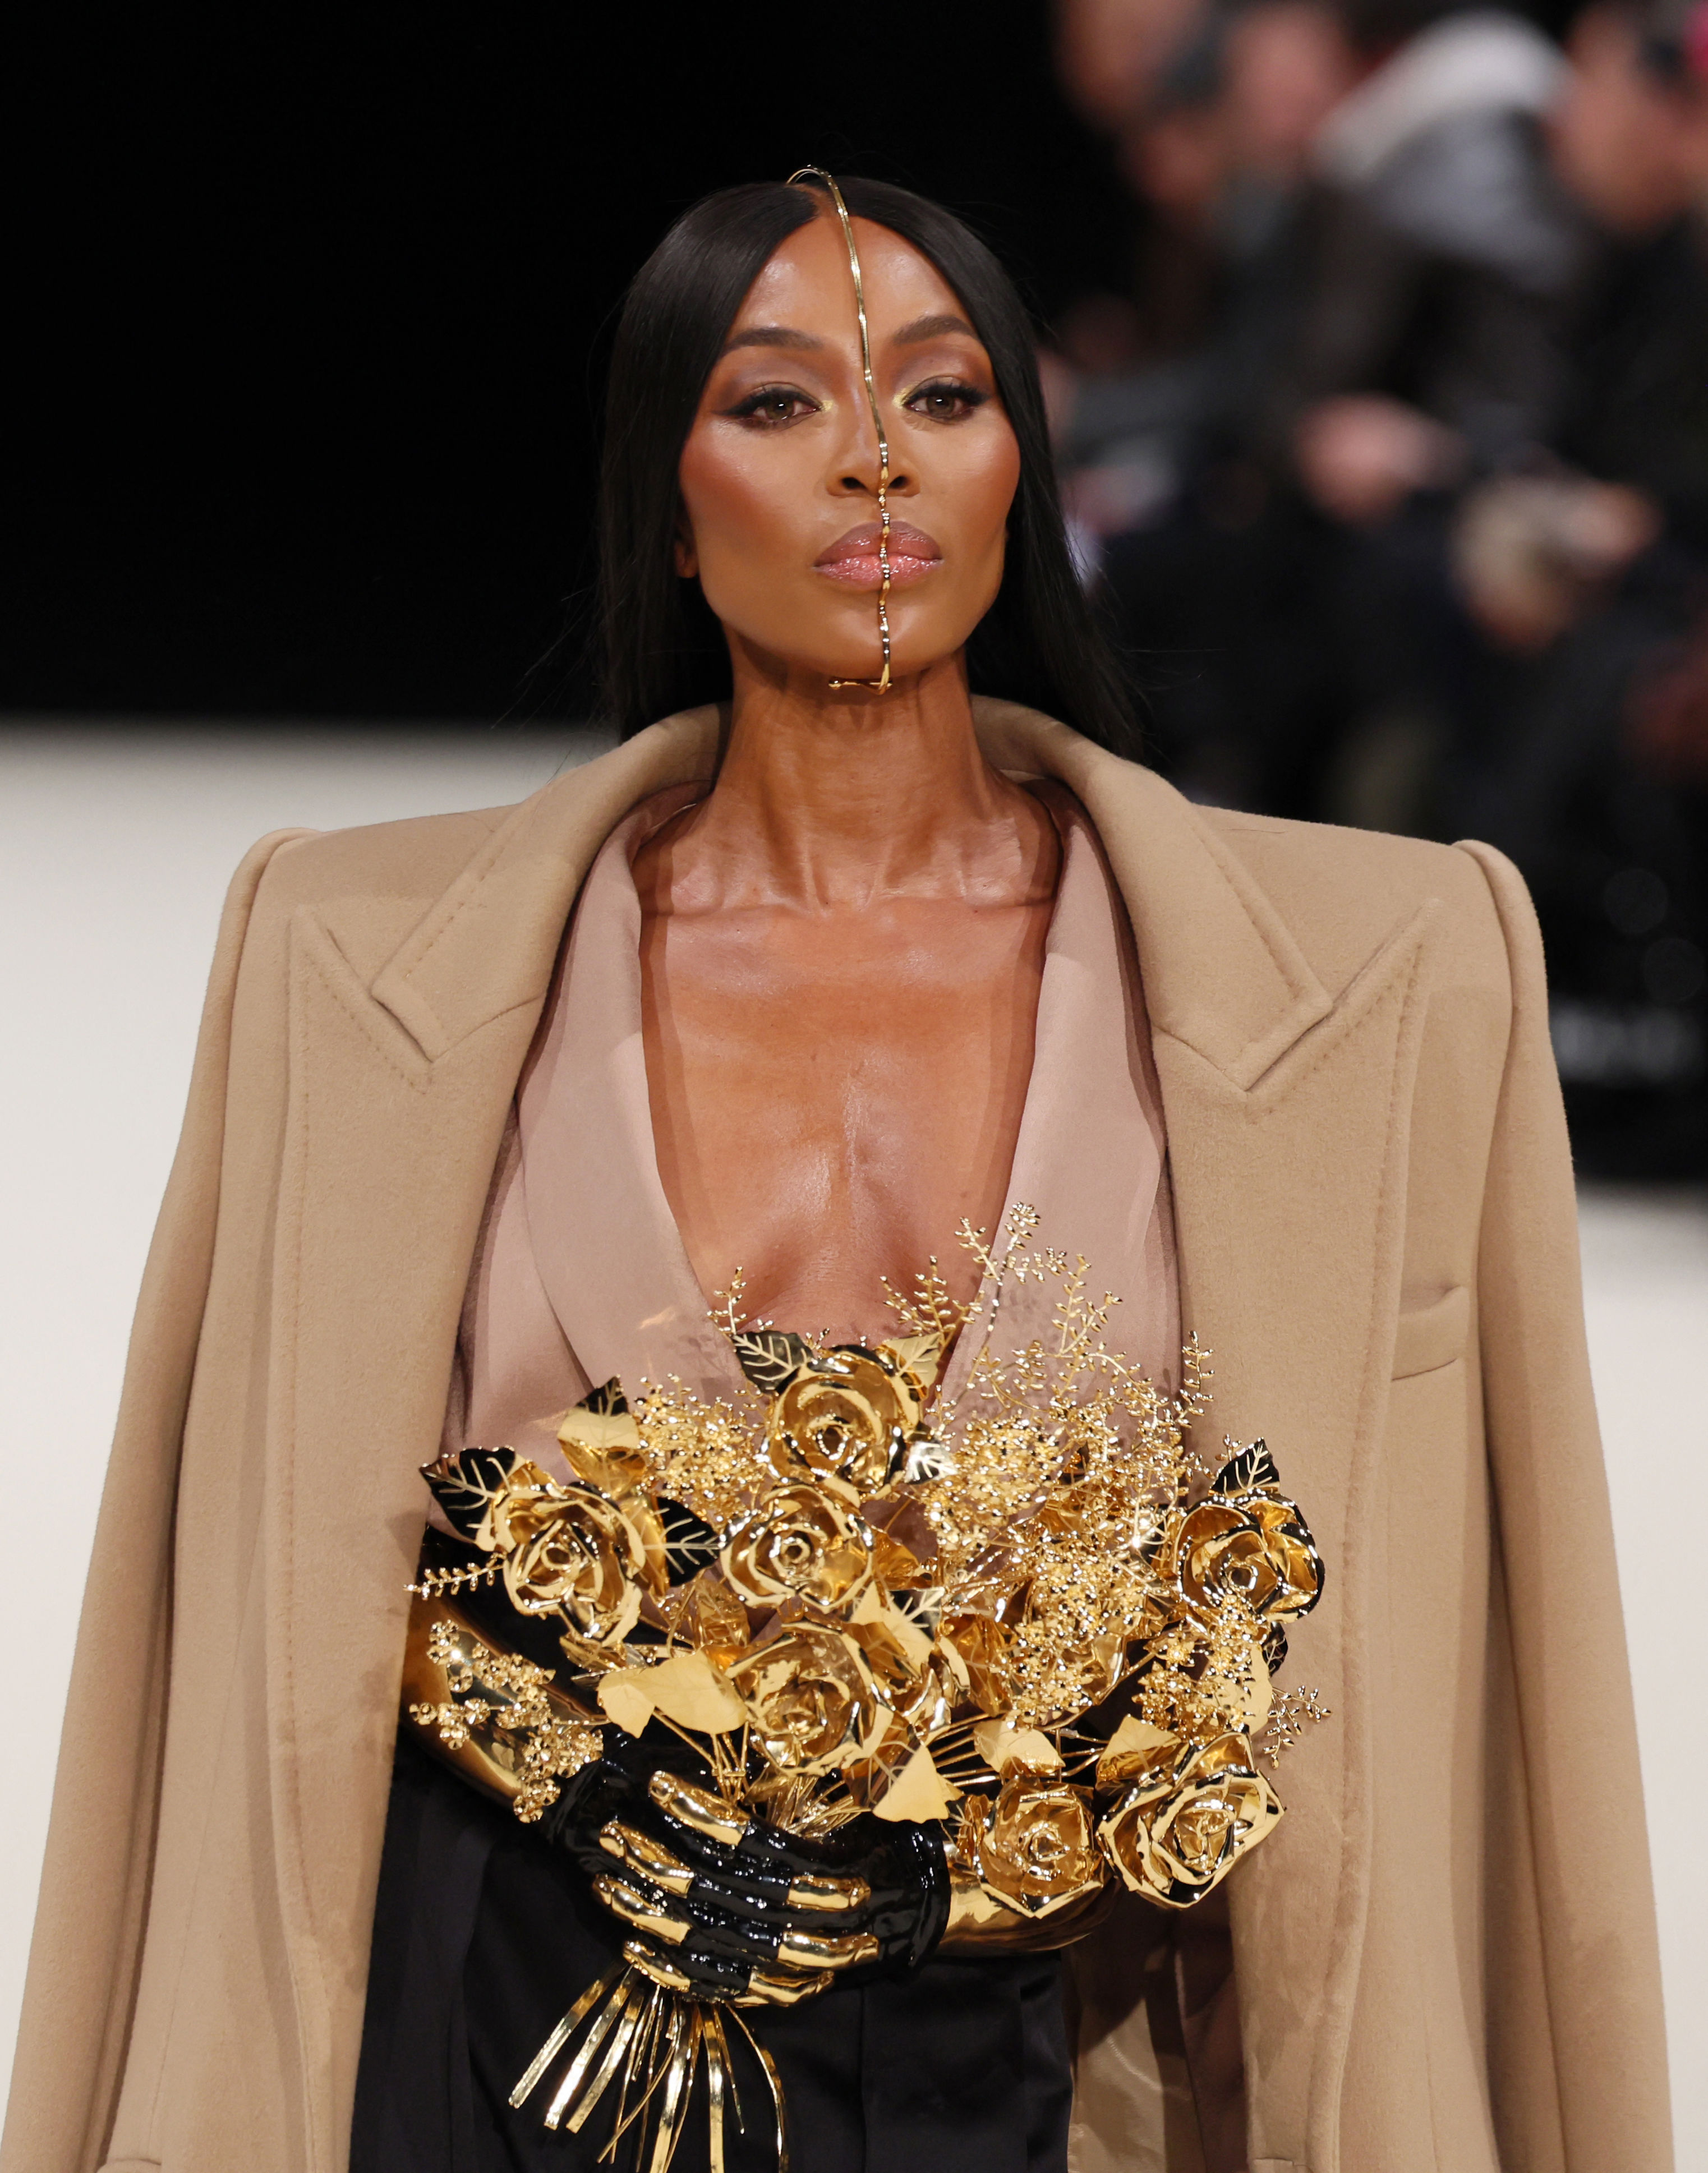 naomi campbell powerfully closes balmain’s menswear show at paris fashion week